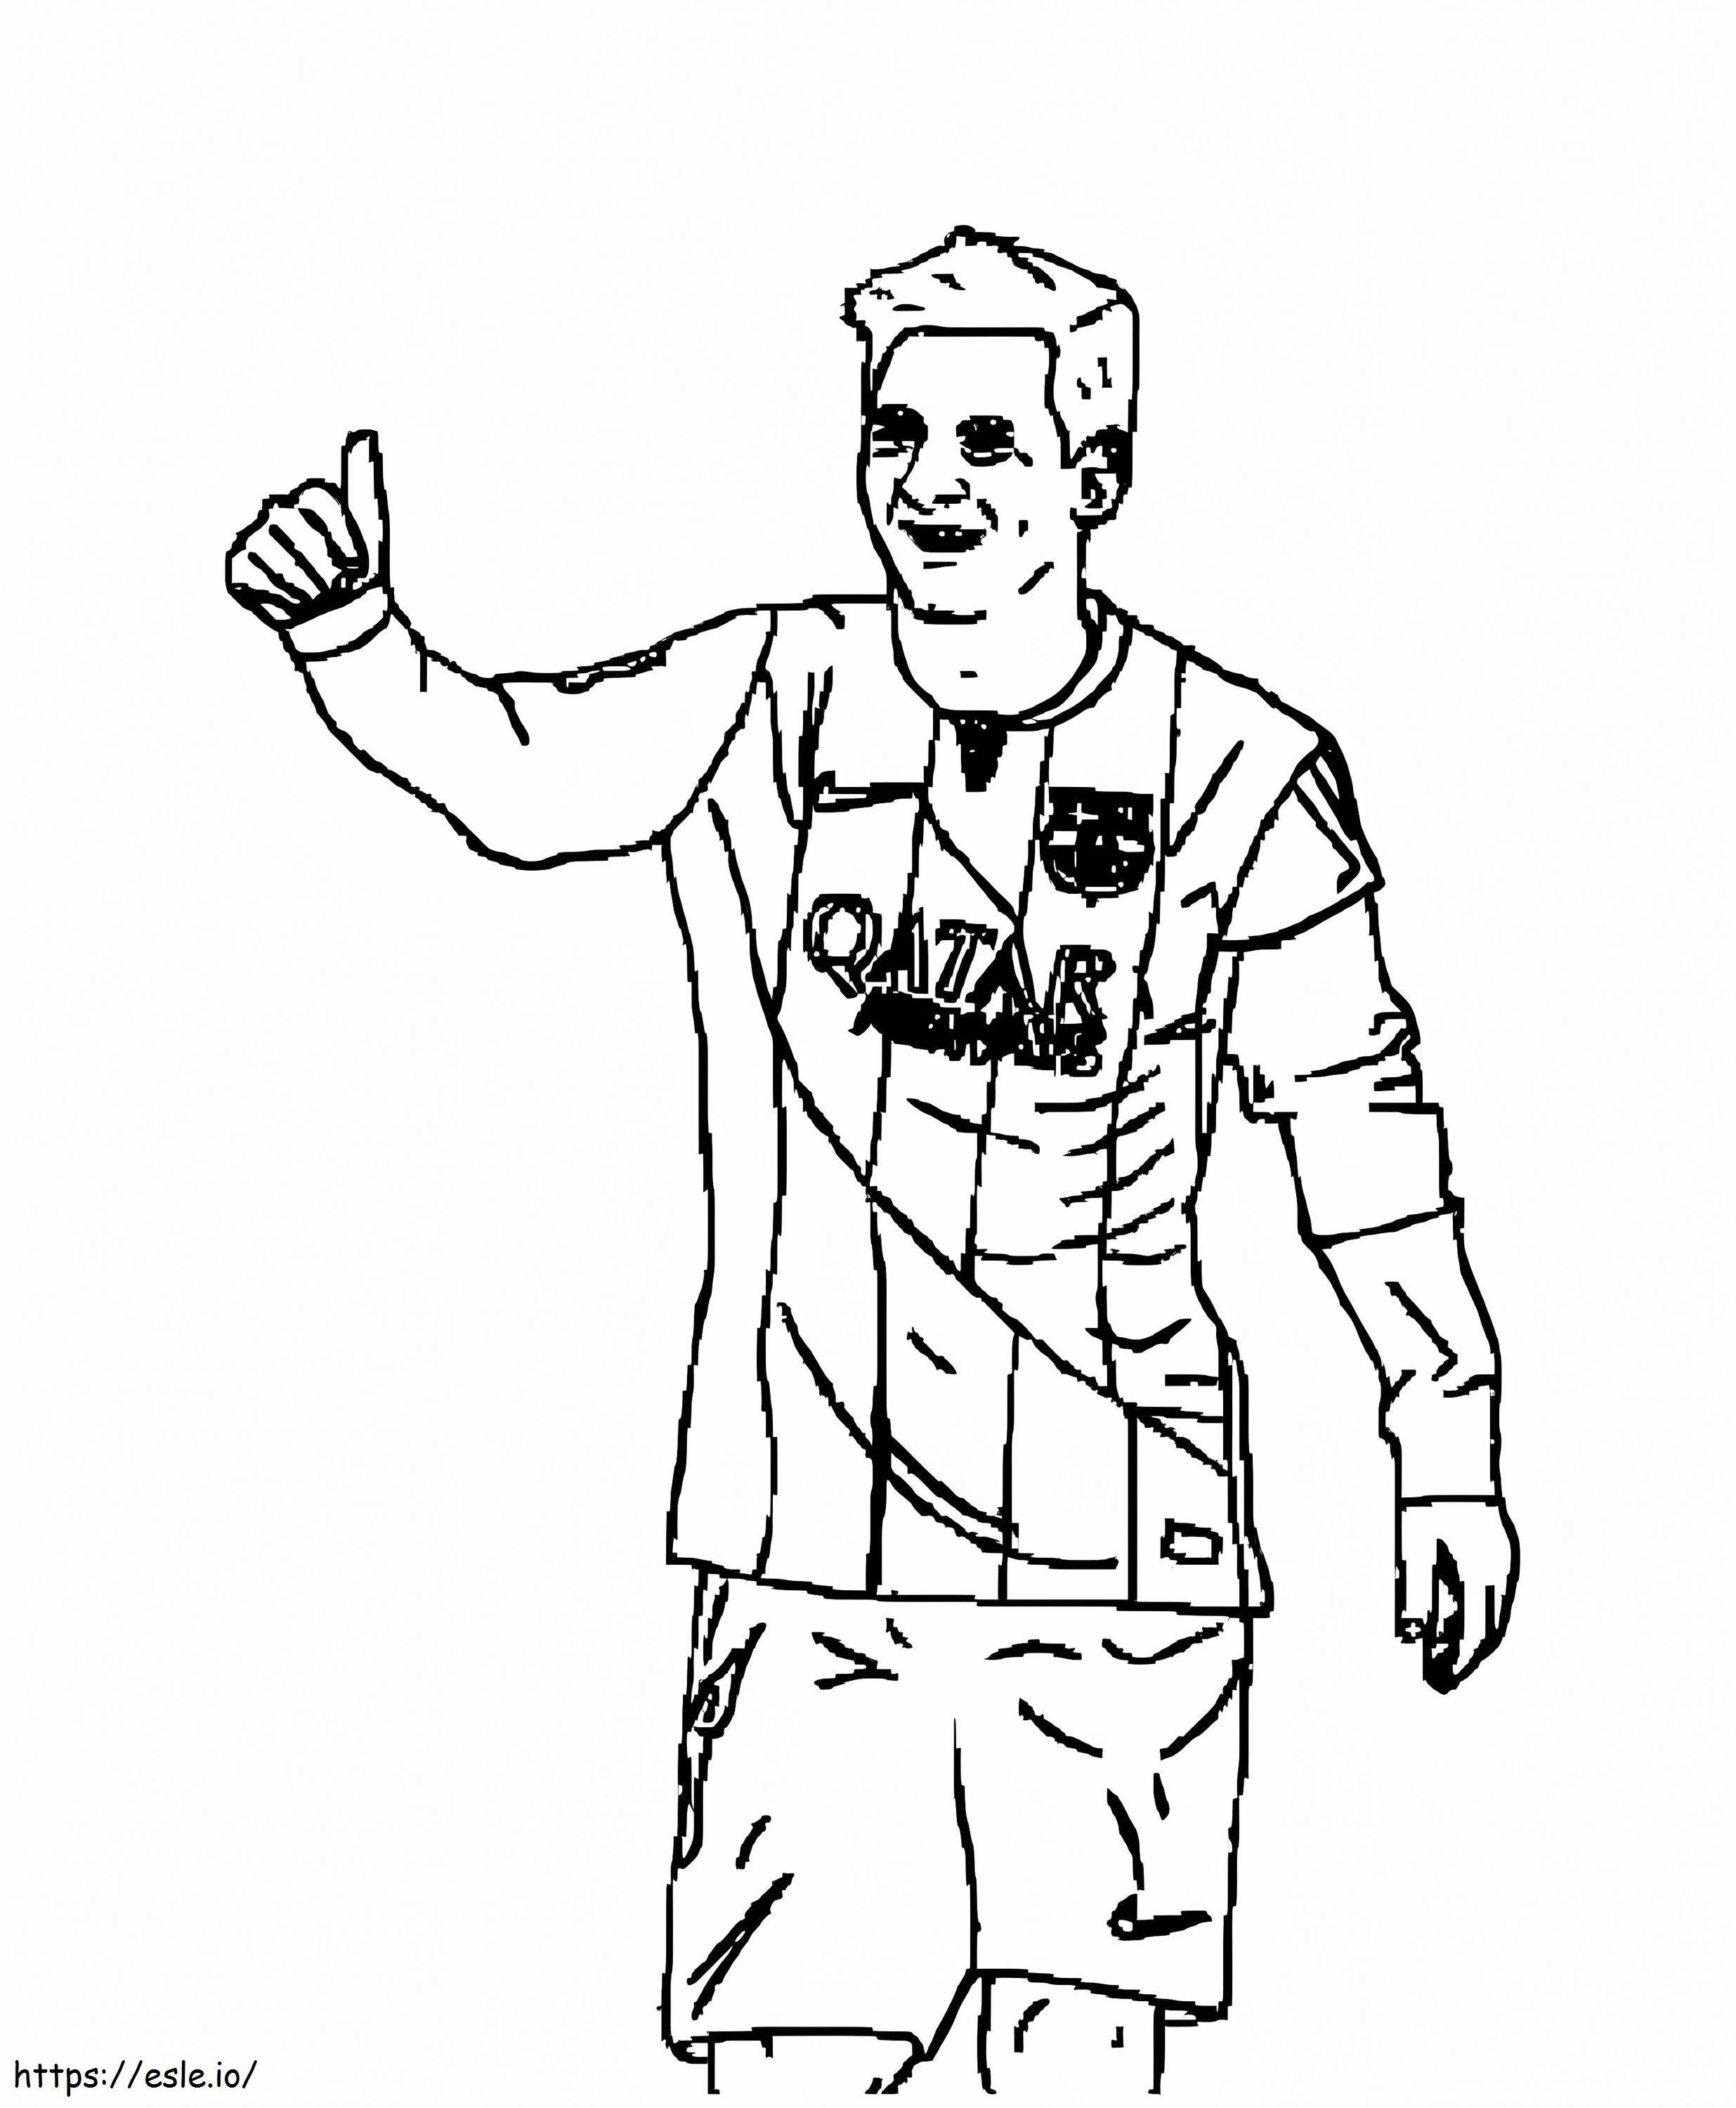 Desenho do Messi para colorir